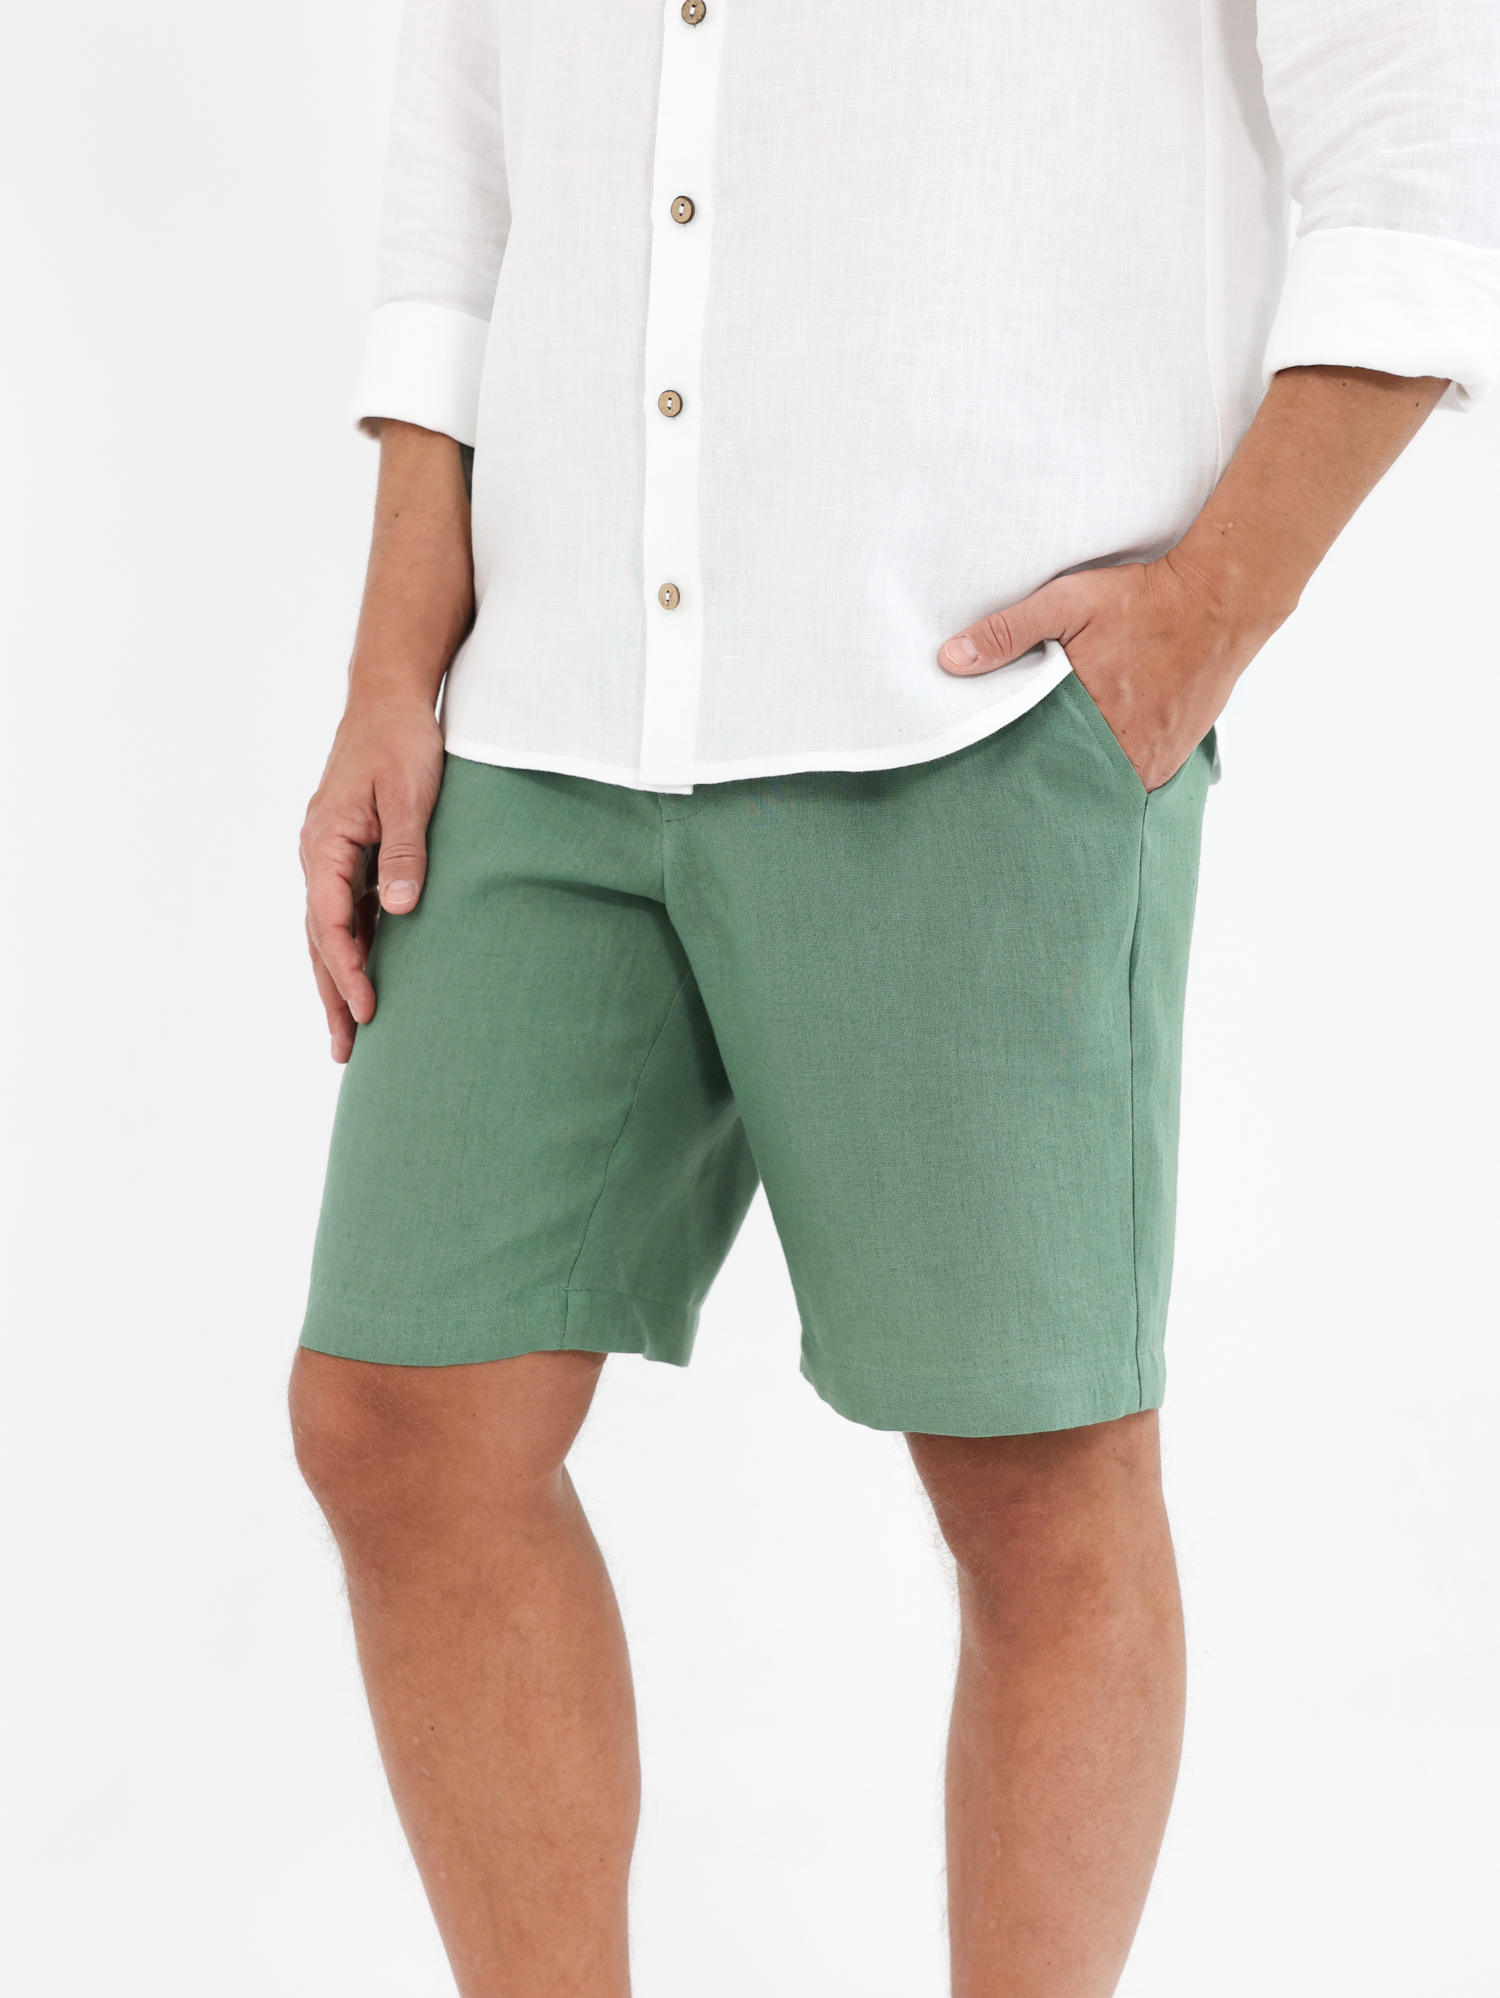 Green linen men's shorts